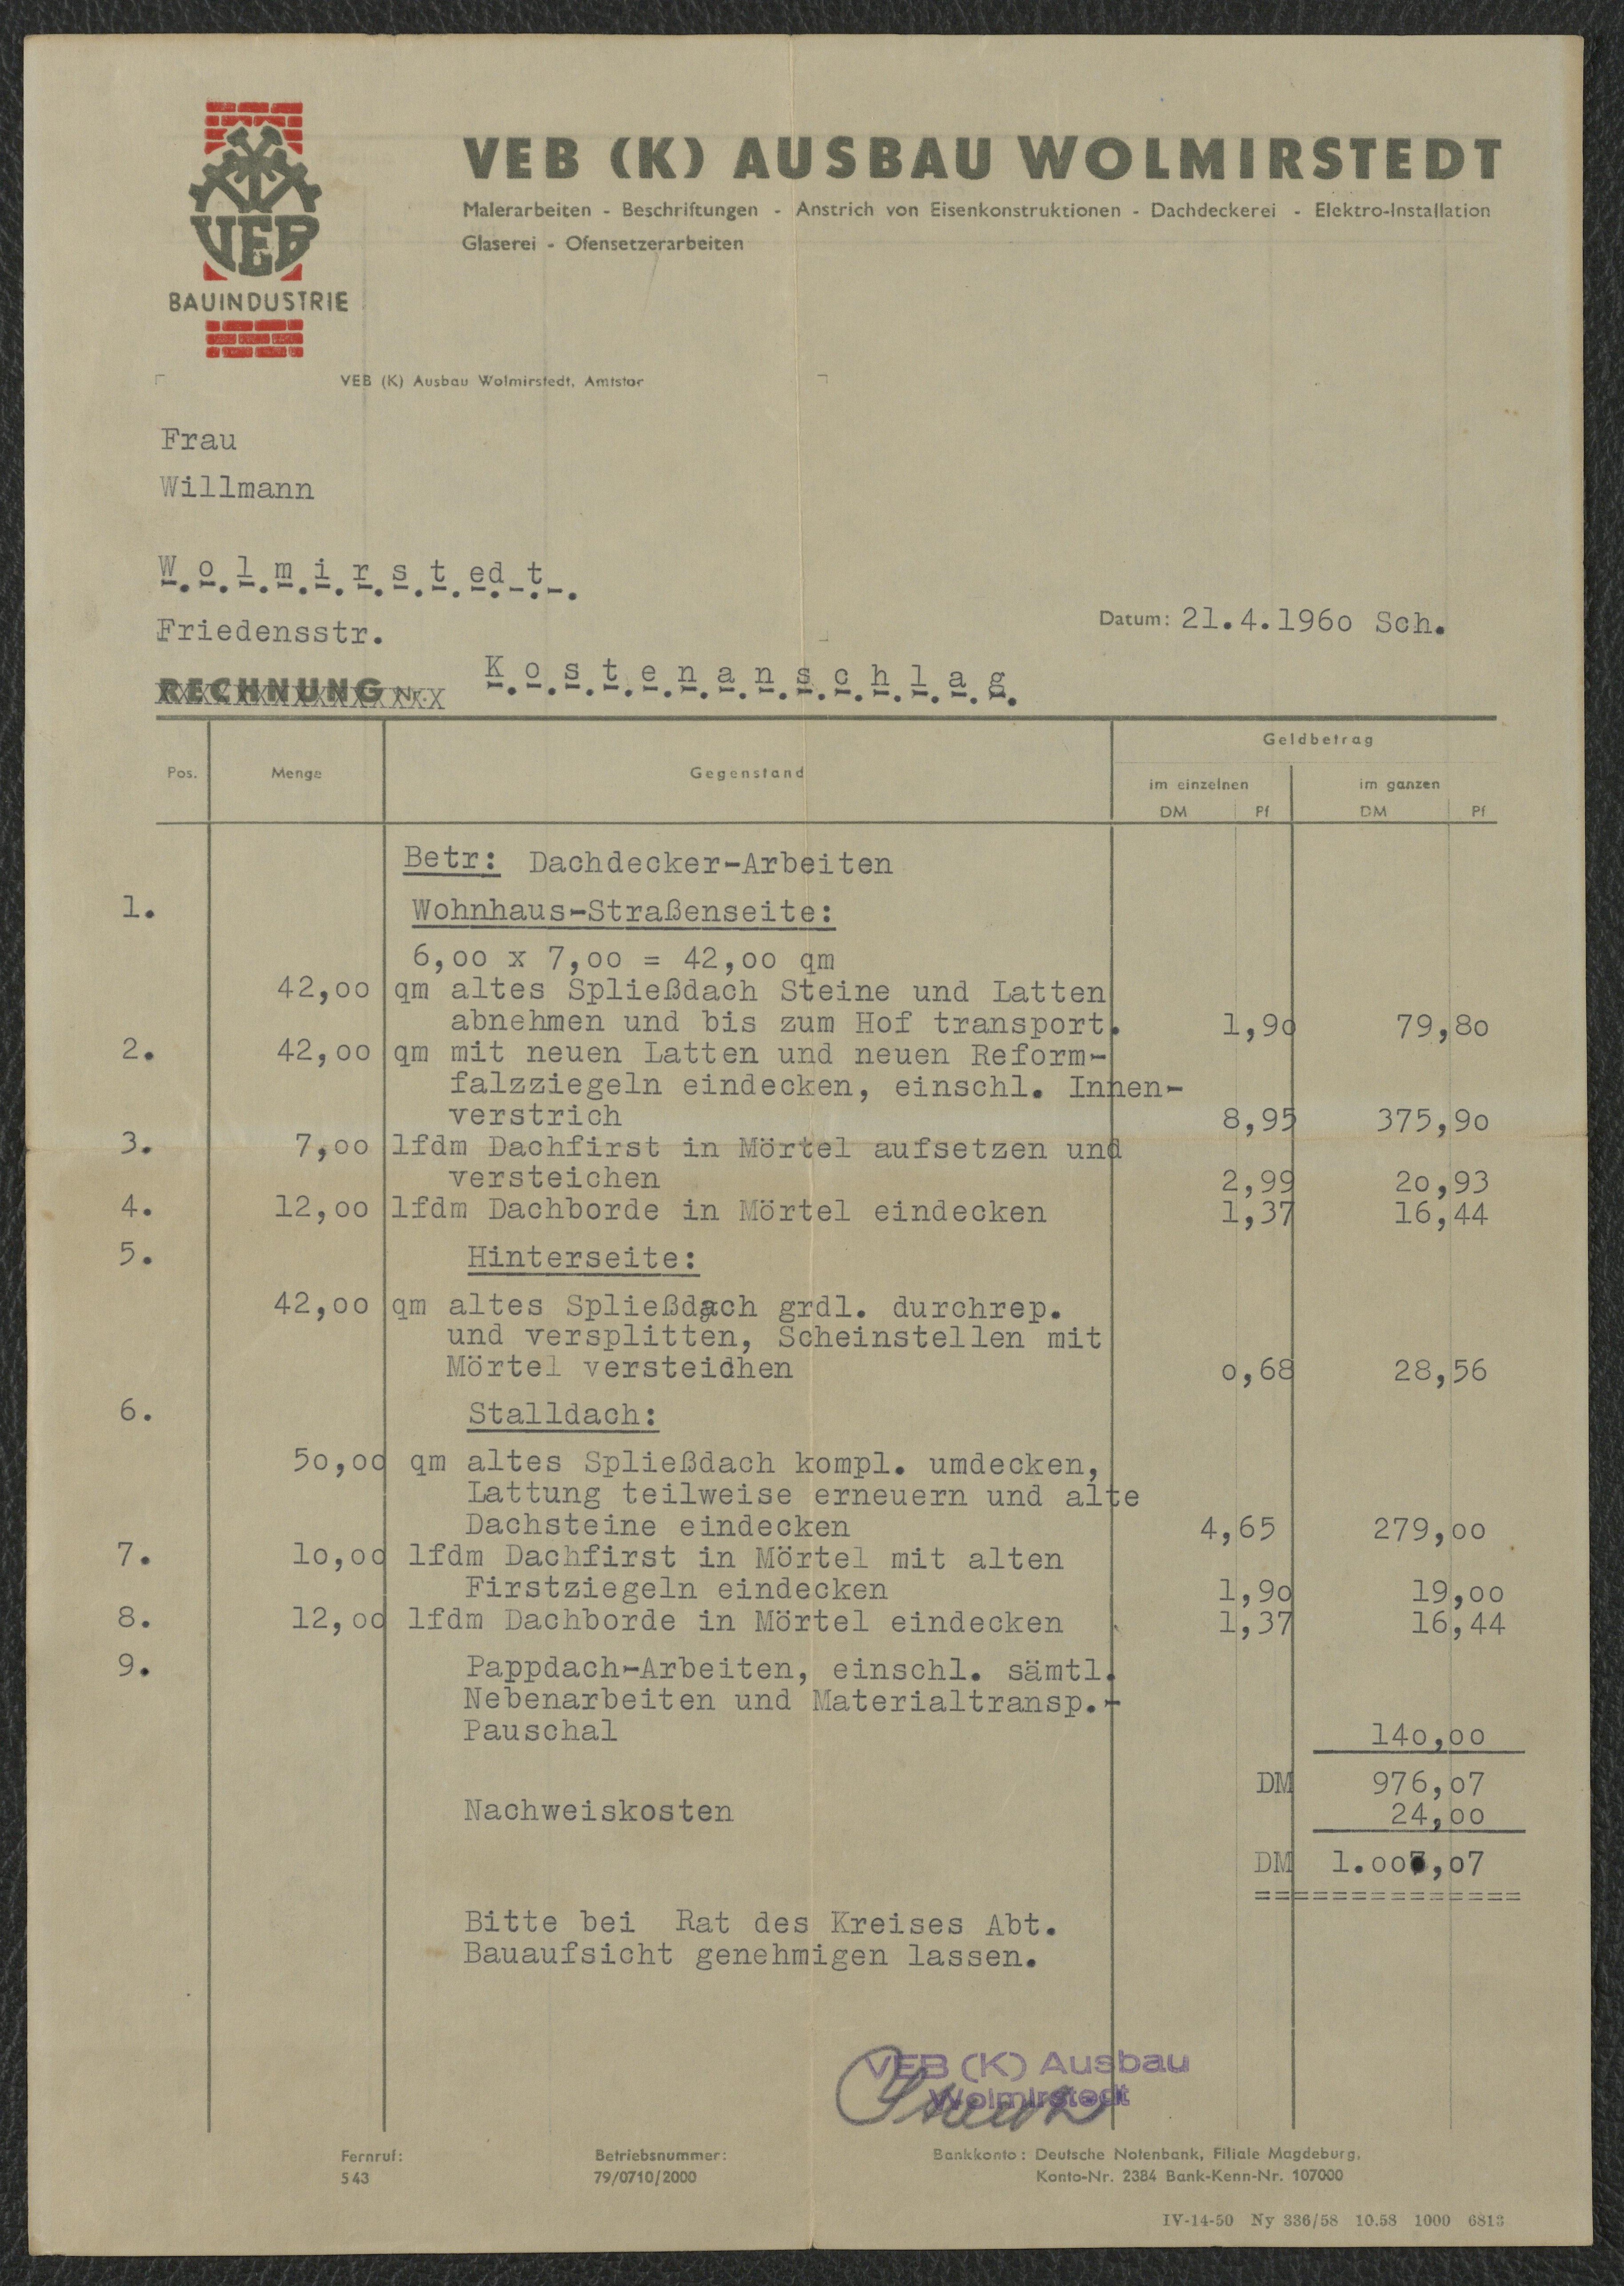 Kostenvoranschlag des VEB (K) Ausbau Wolmirstedt für Willmann, Wolmirstedt vom 21.04.1960 (Museum Wolmirstedt RR-F)